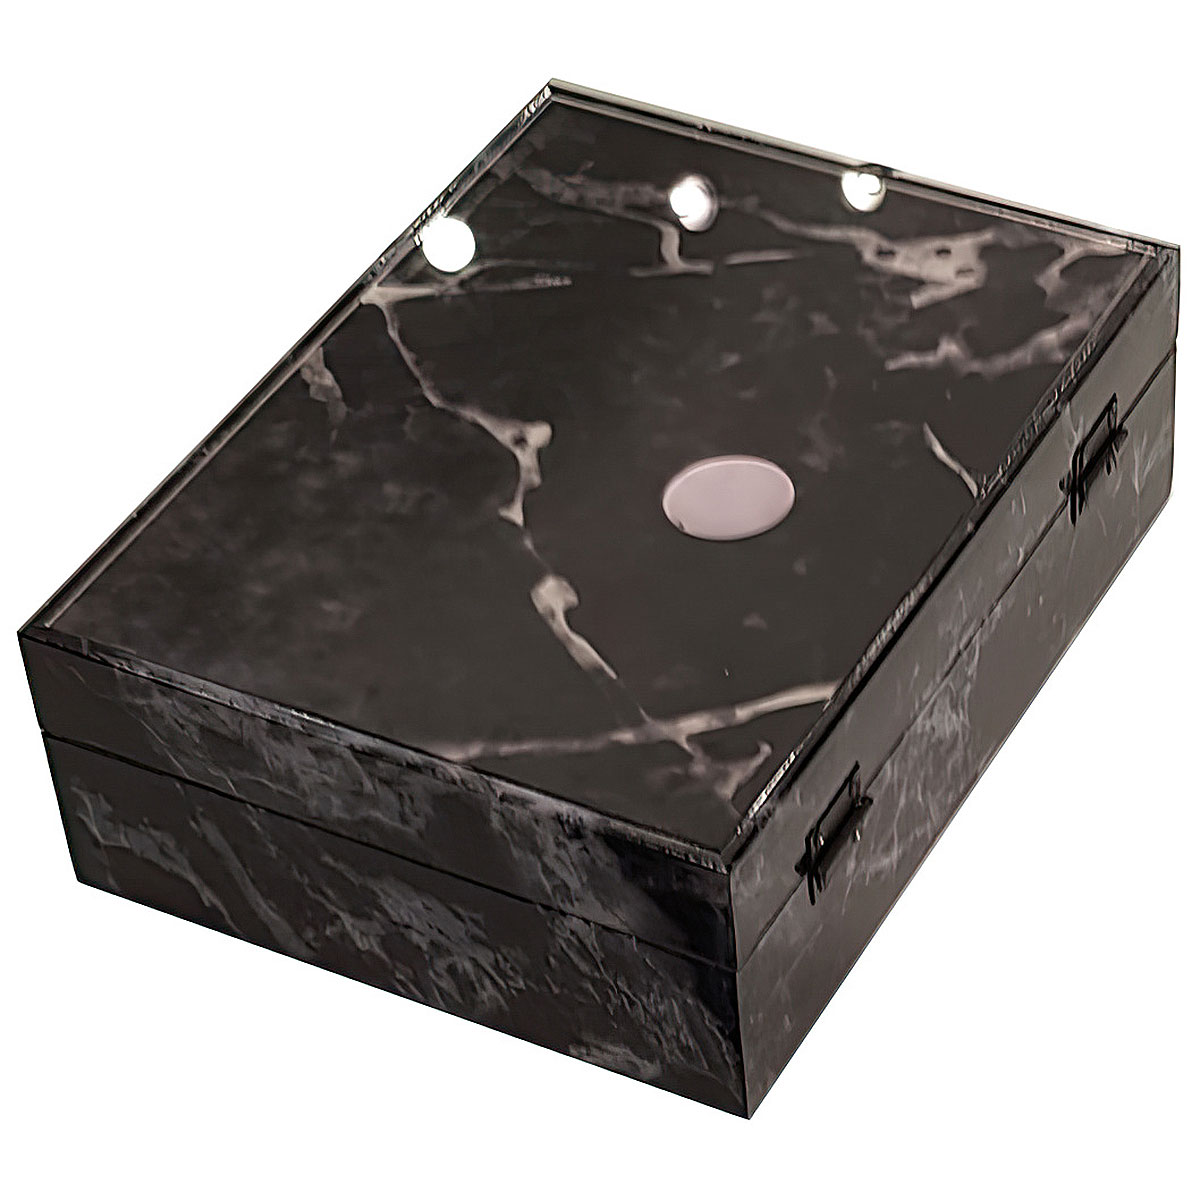 Шкатулка Ozverler marble black 20x26см Ozverler DK-5672, цвет черный